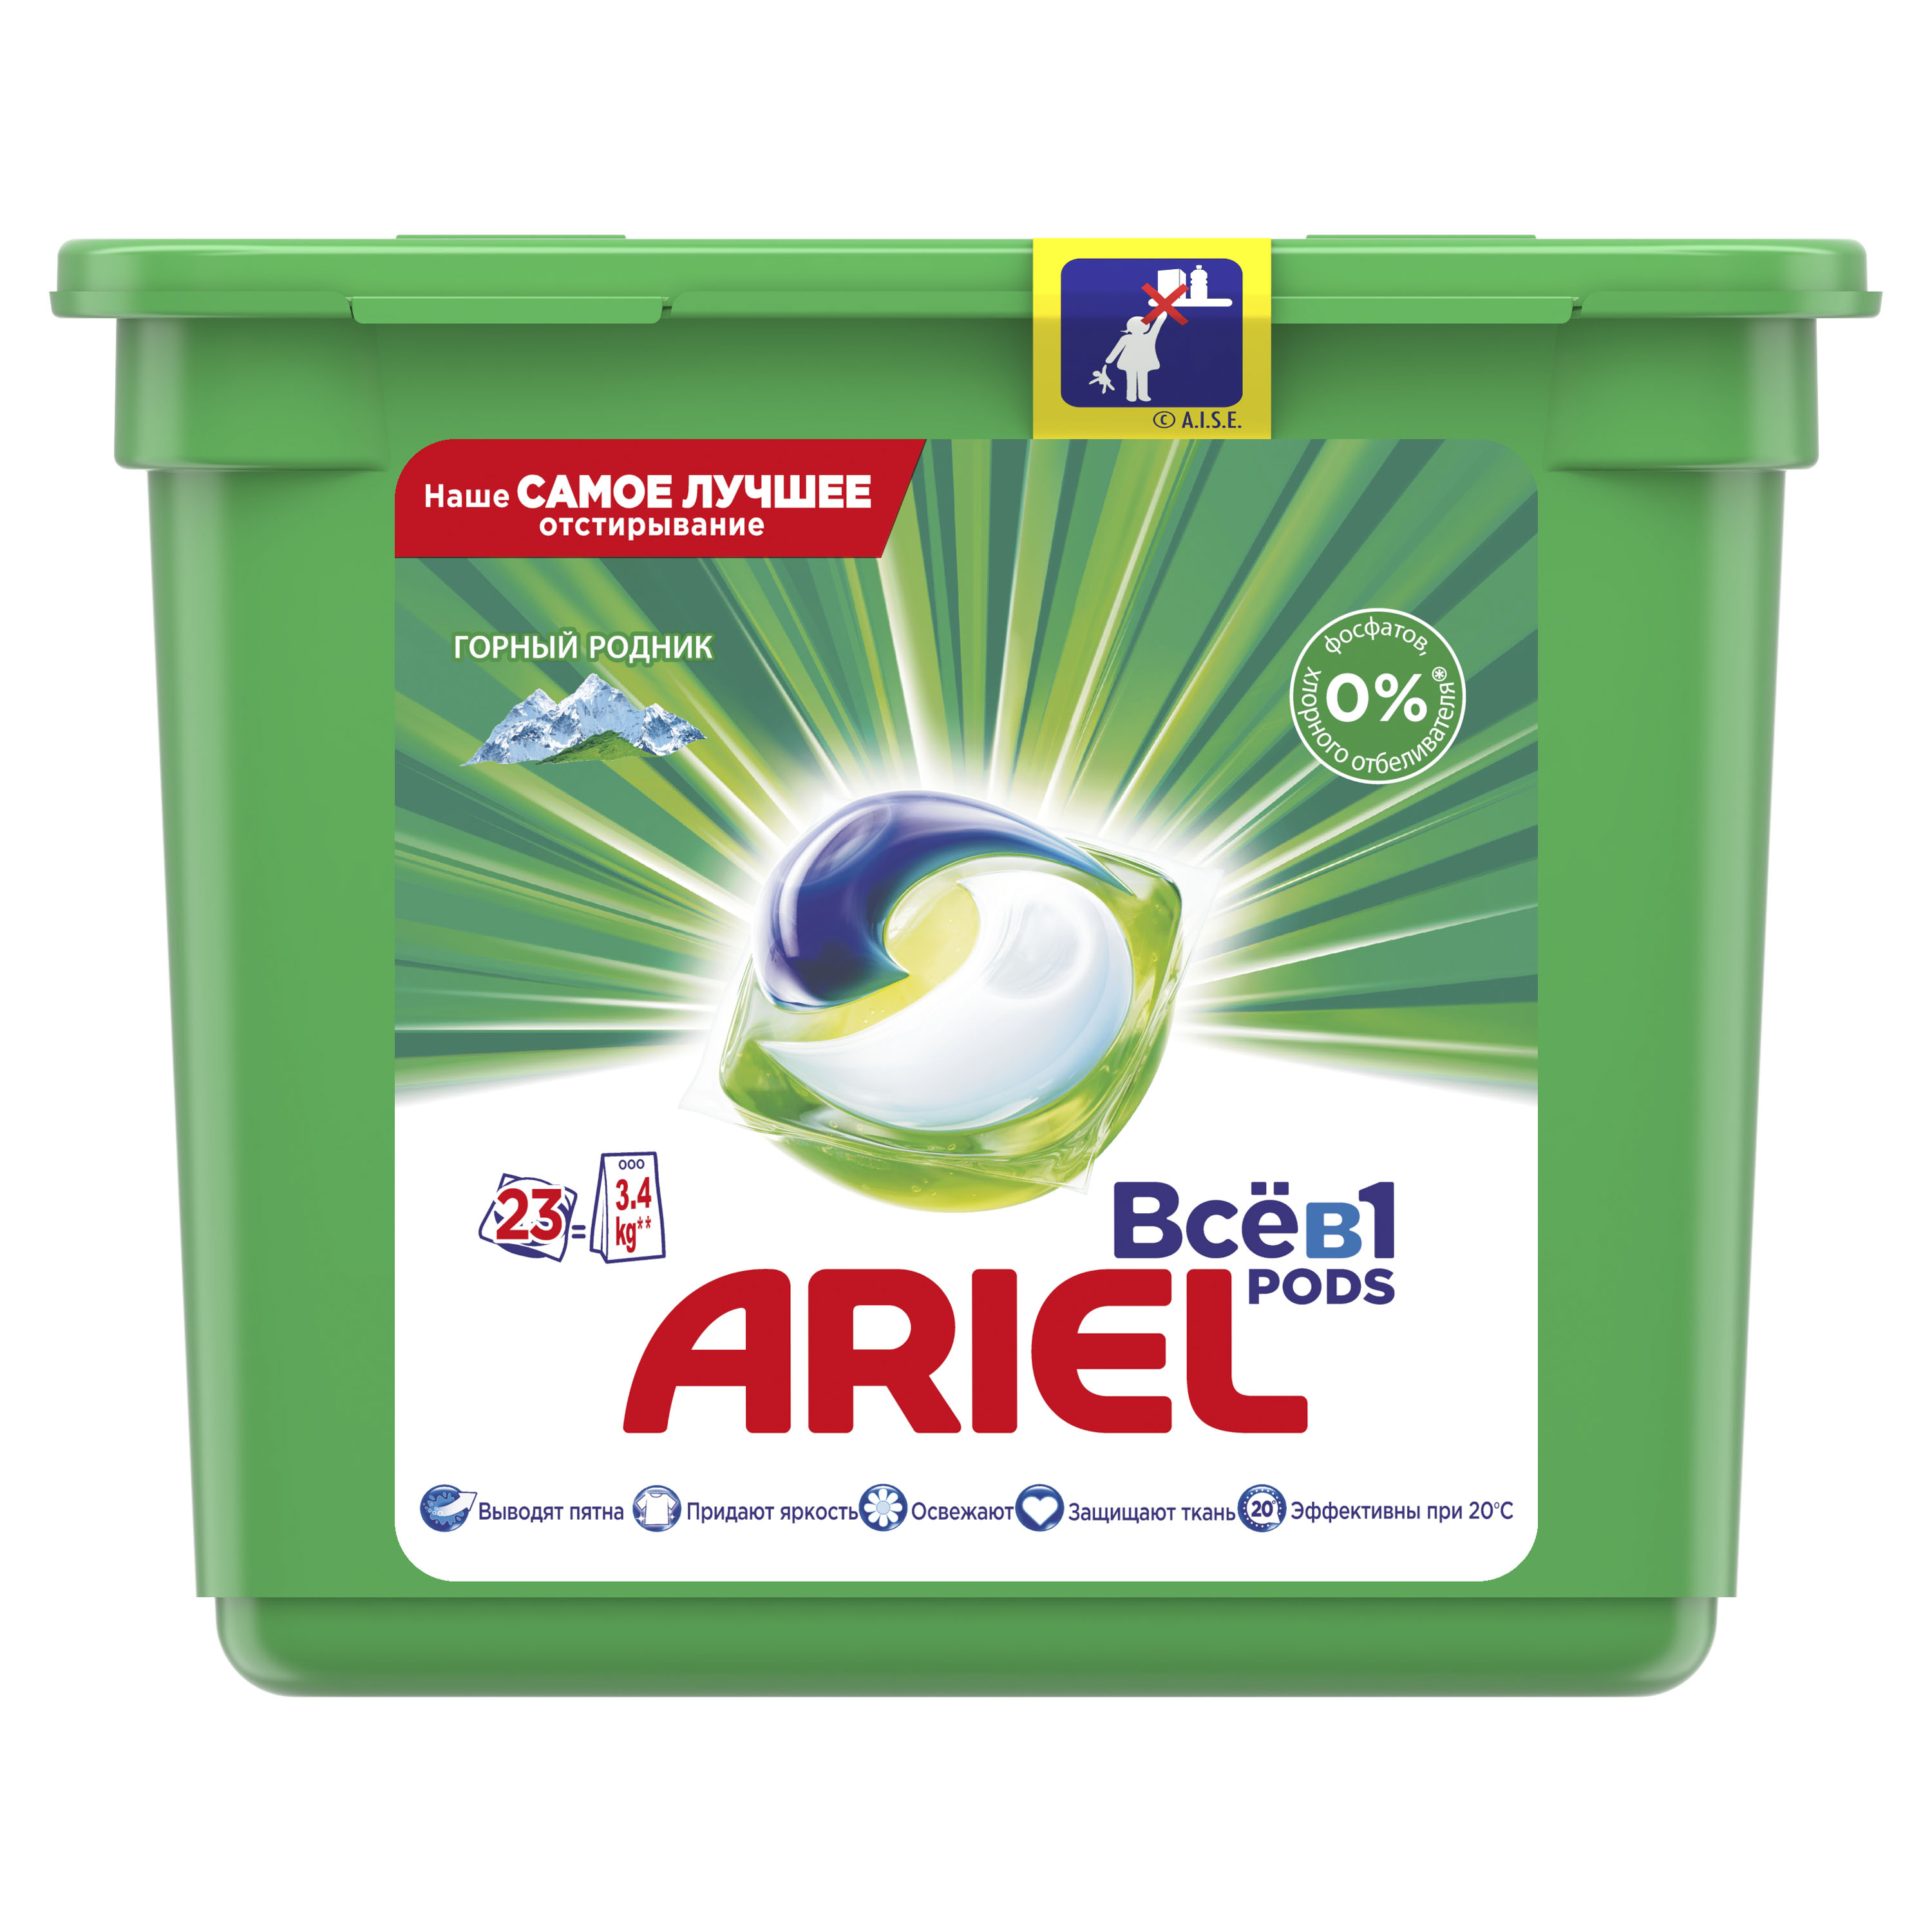 Капсули для прання Ariel Pods Все-в-1 Гірське джерело, для білих і кольорових тканин, 23 шт. - фото 1